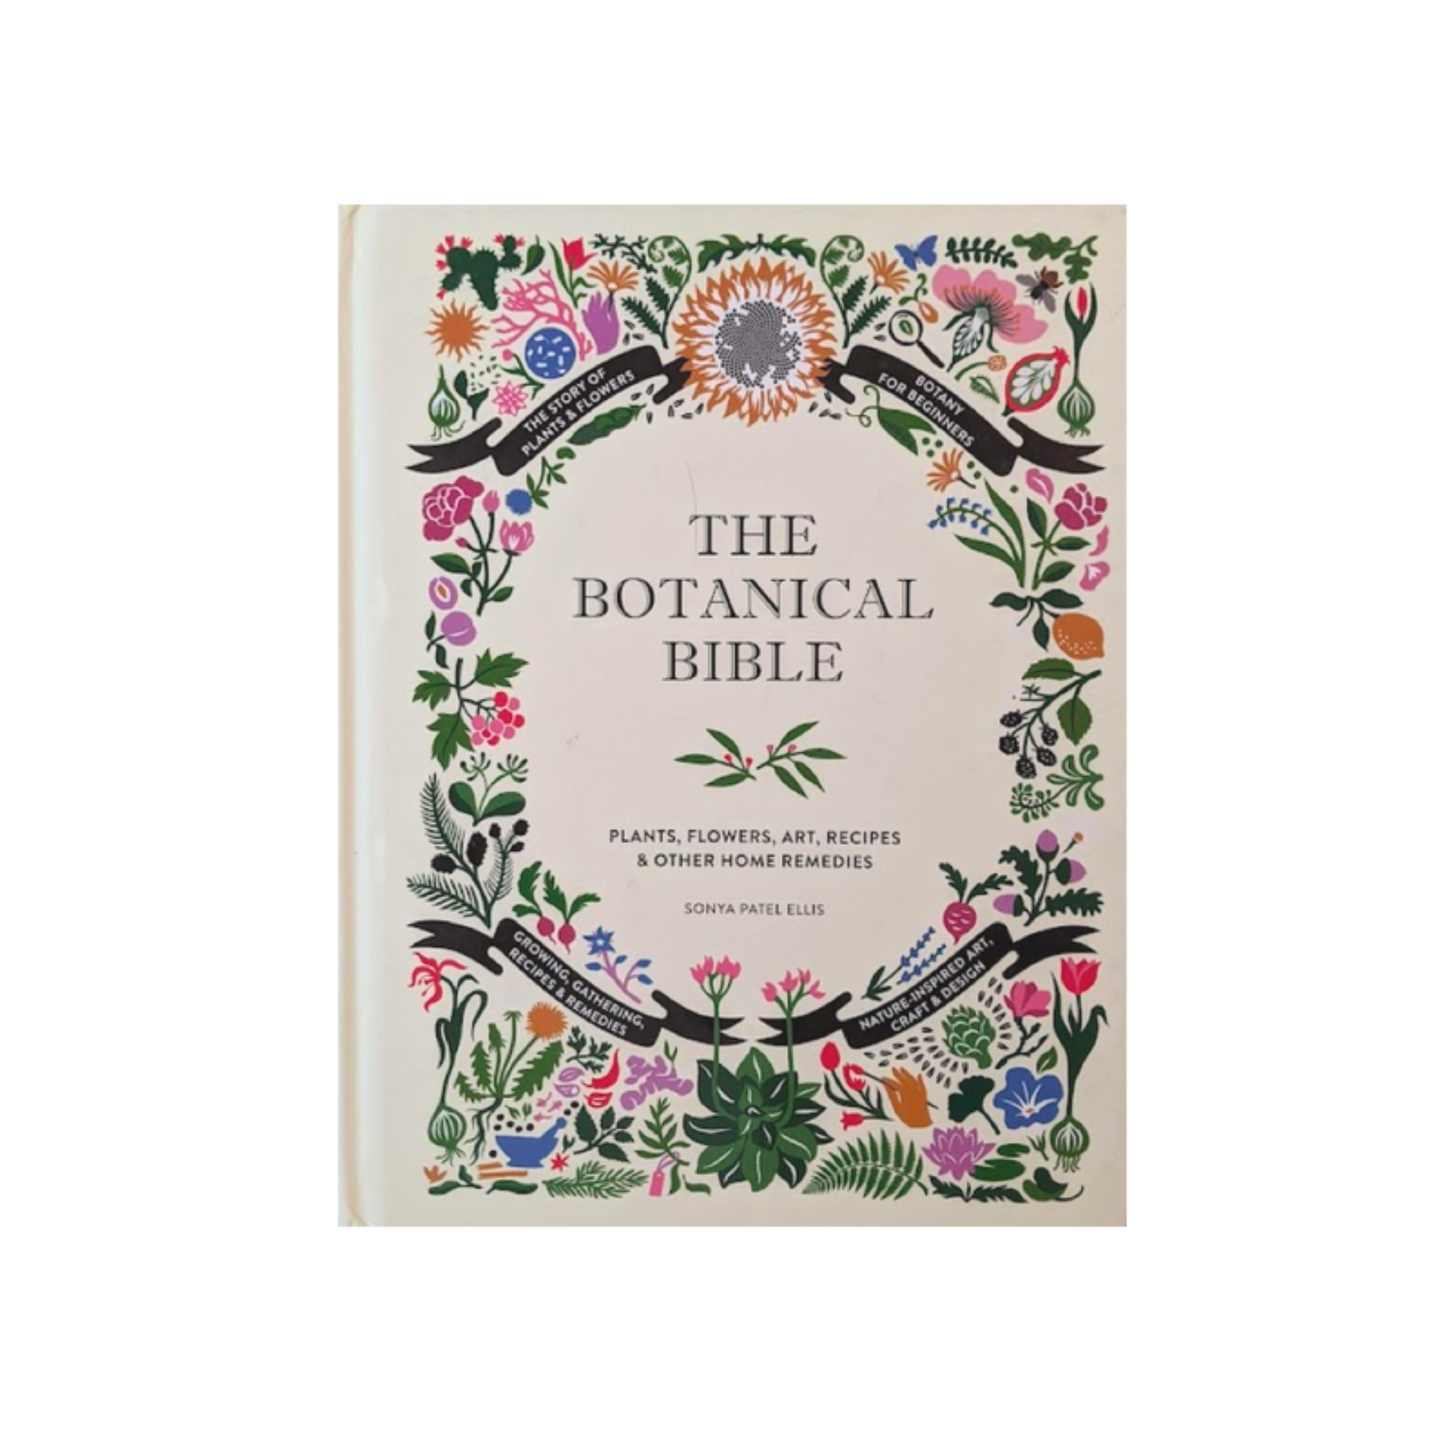 The Botanical Bible